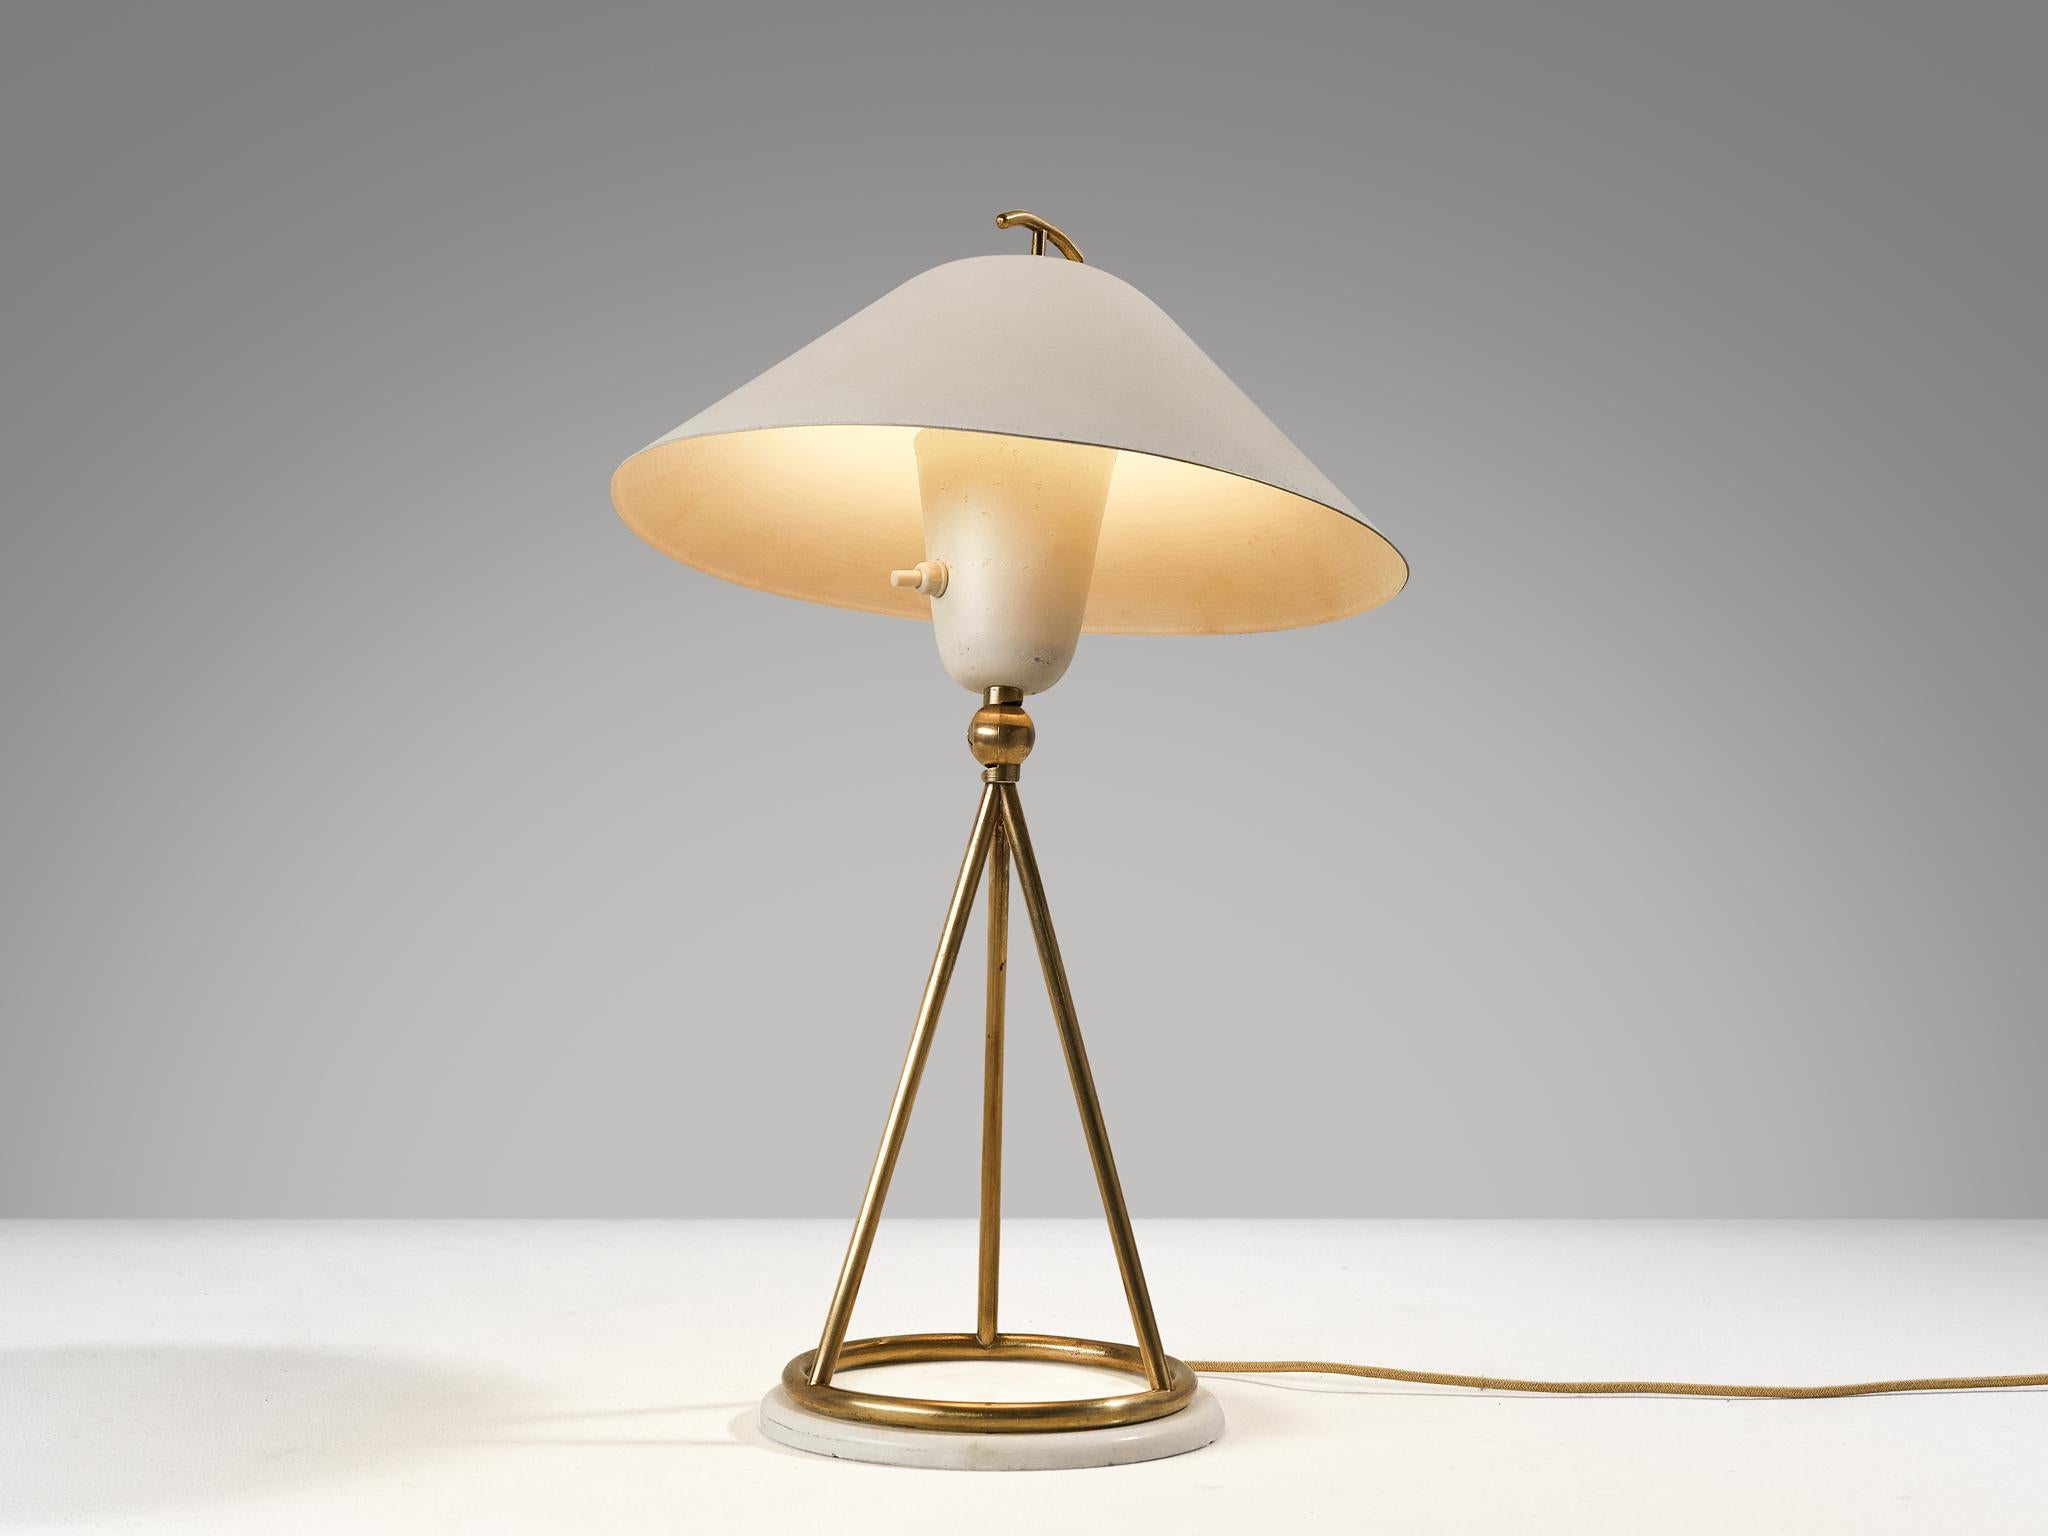 Gino Sarfatti pour Arteluce, lampe de table, modèle '516', laiton, marbre, aluminium émaillé, Italie, 1948.

Cette lampe de bureau, modèle 516, est conçue par le designer influent dans le domaine du design-Light Gino Sarfatti (1912-1985) pour